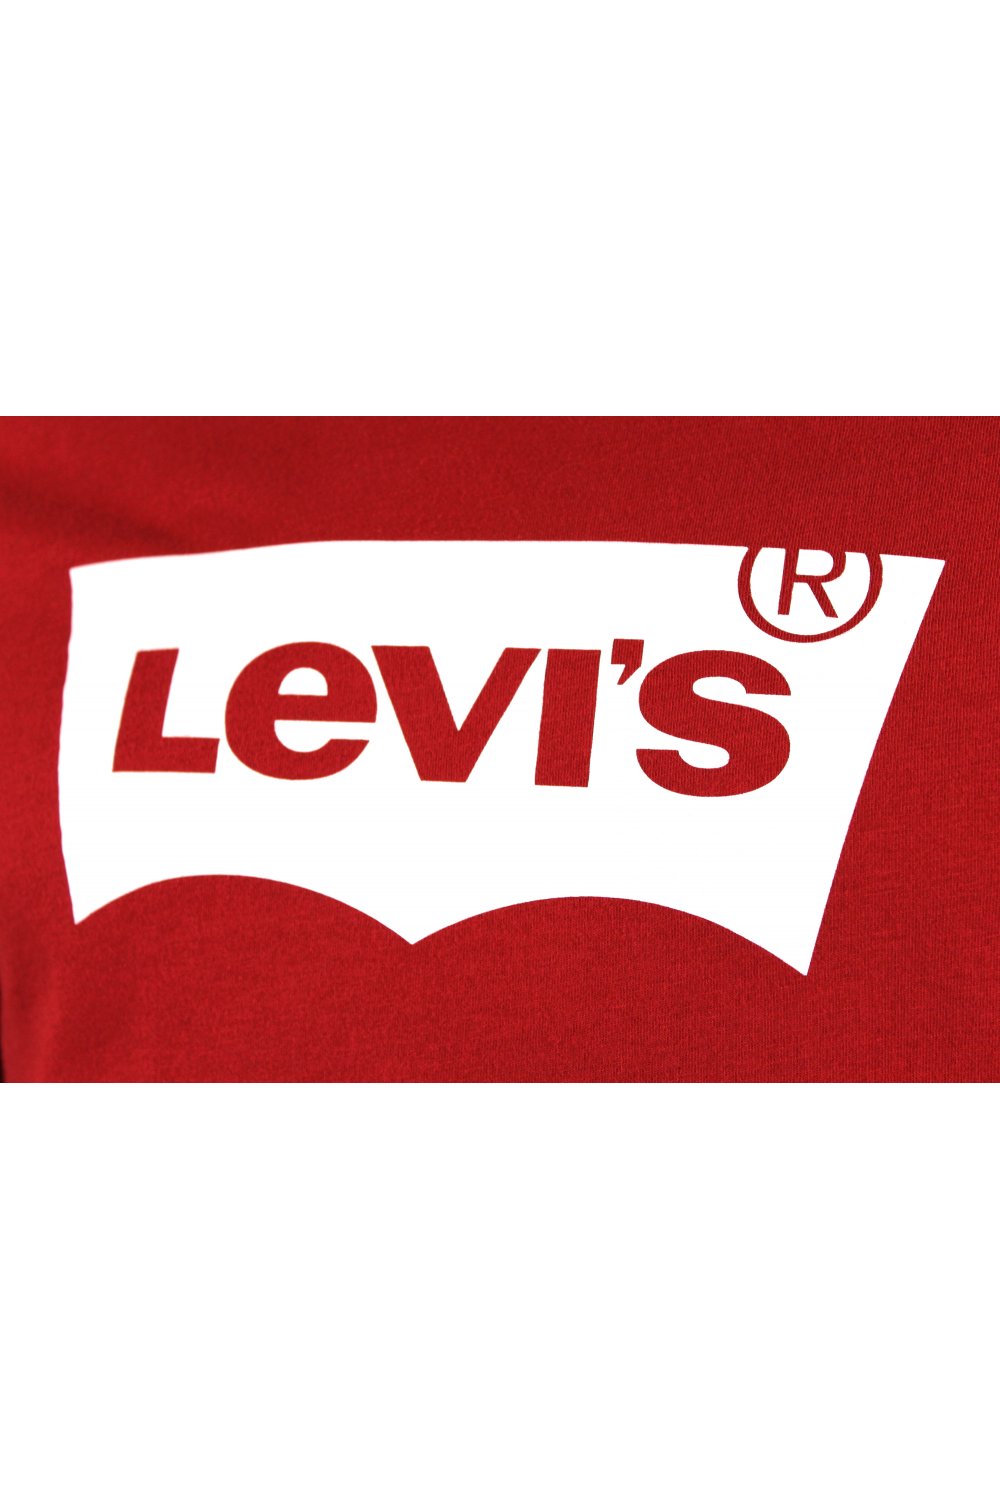 Levis jeans Logos